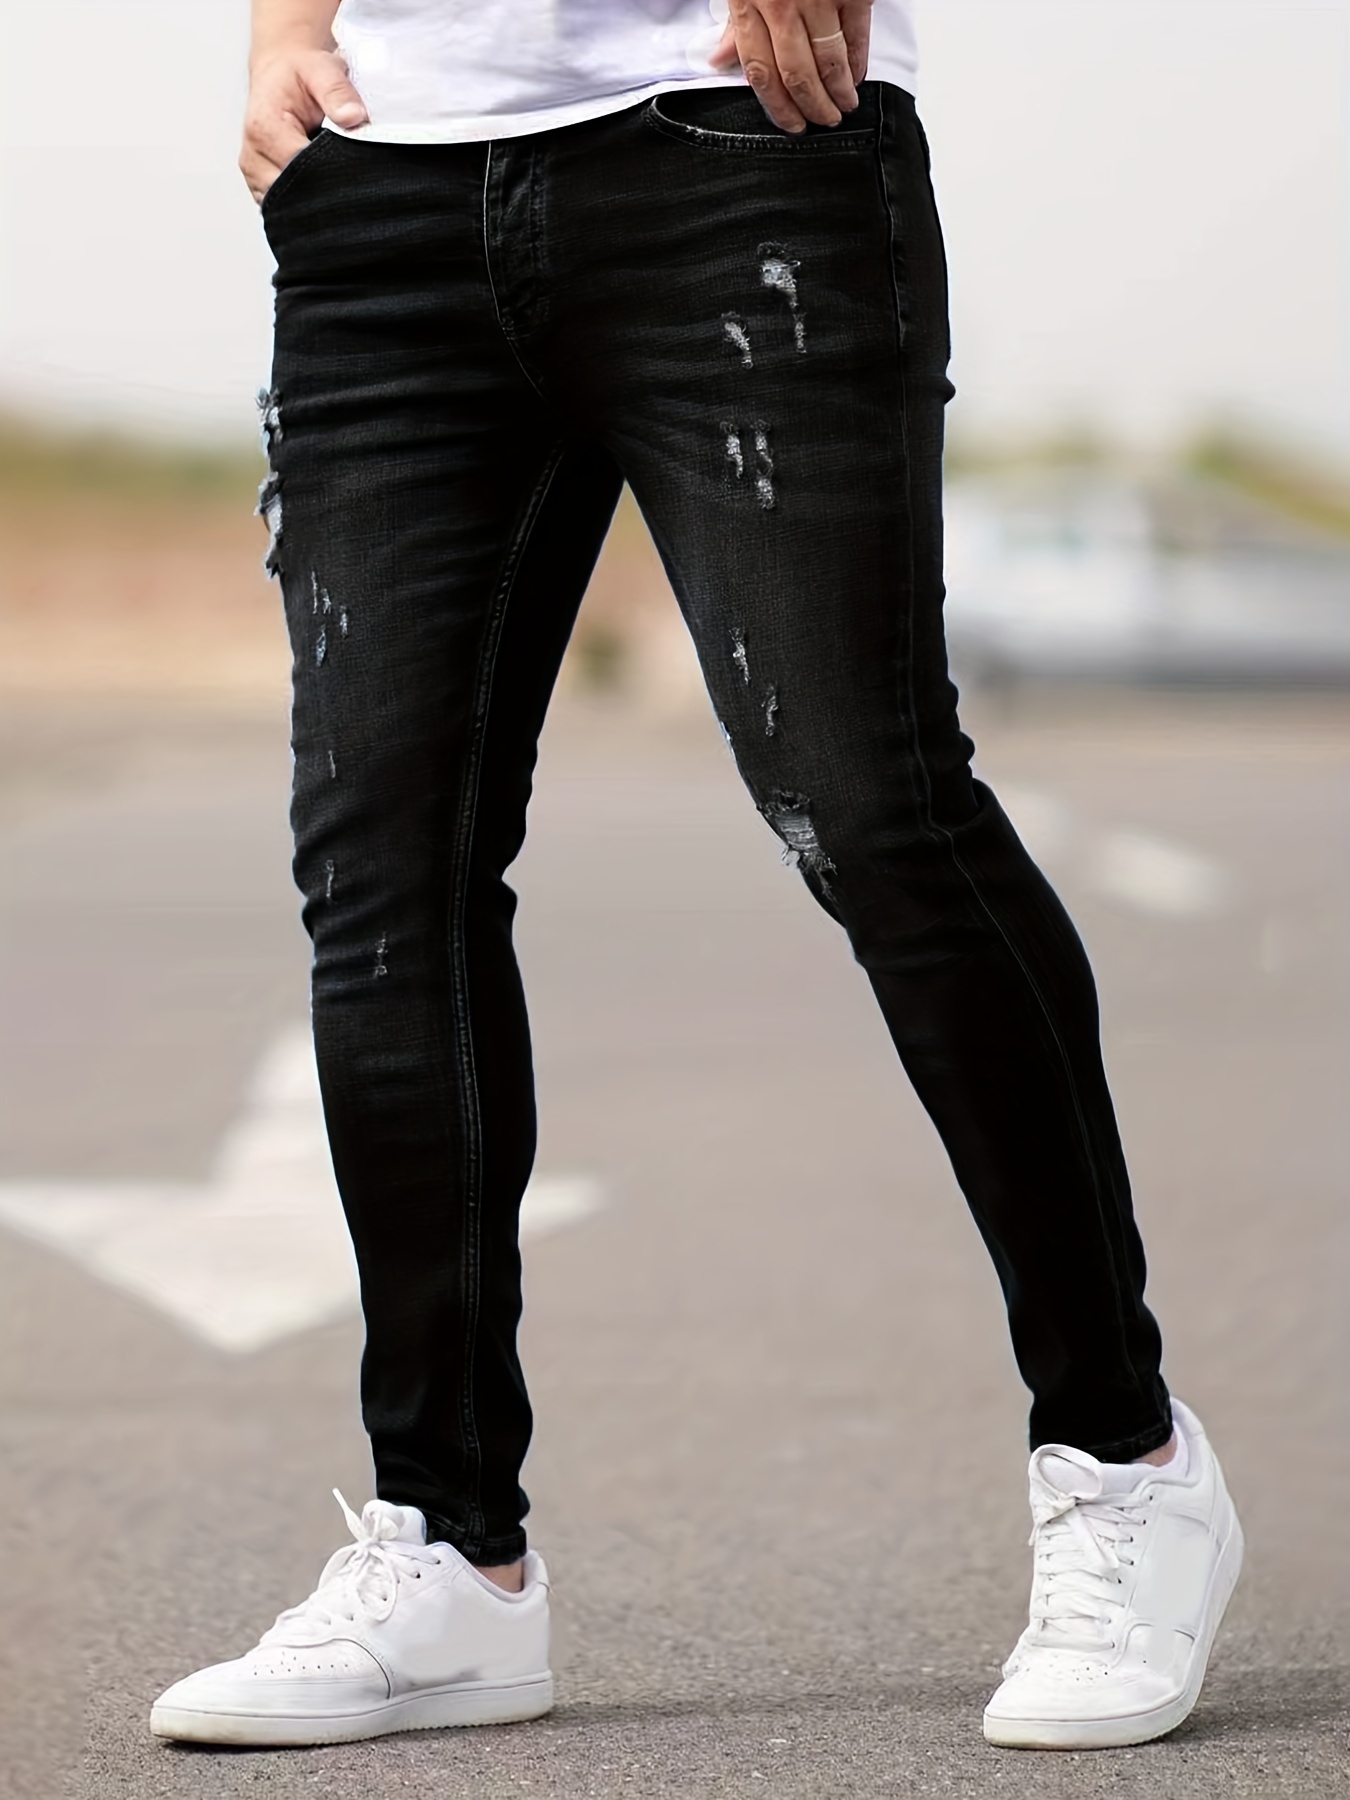 Pantalones ajustados elásticos blancos para hombre, Jeans rasgados